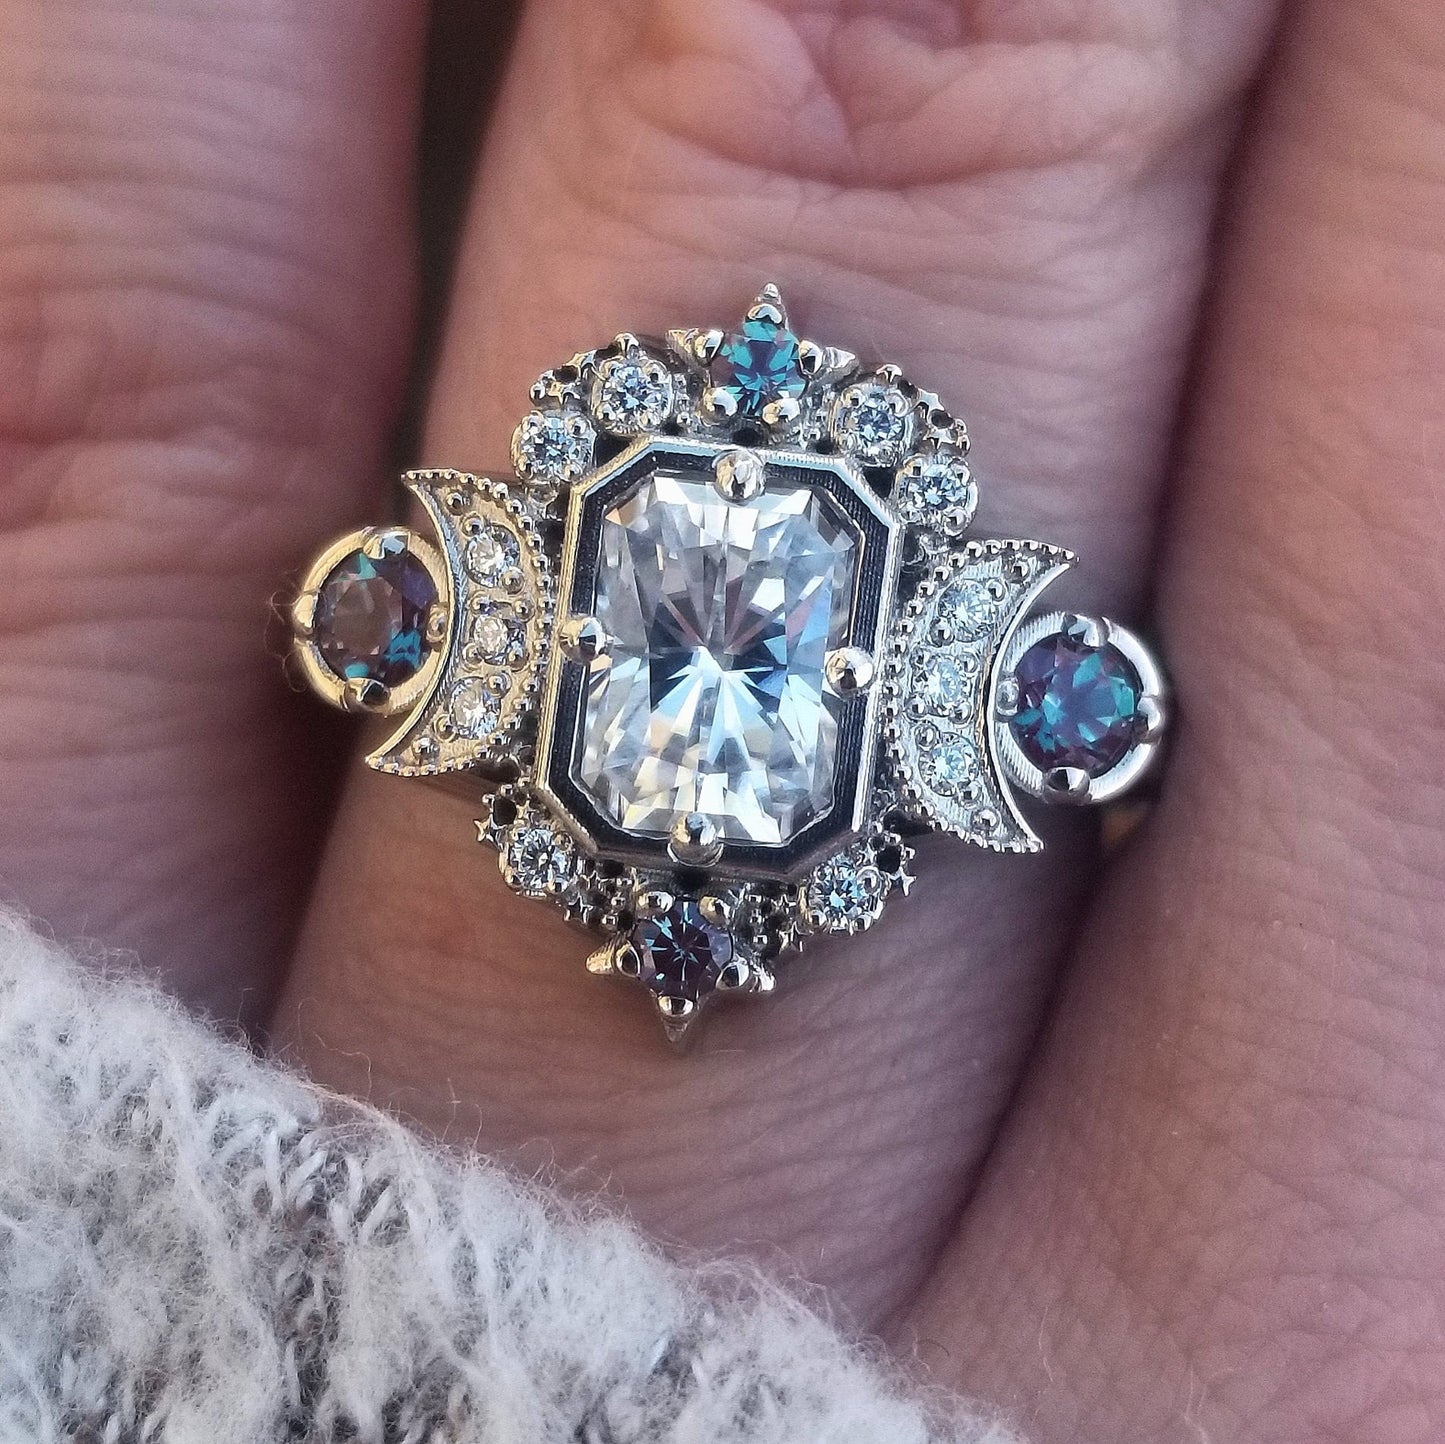 Radiant Selene Moon Goddess Engagement Ring - Moissanite , Diamond and Chatham Alexandrite - 14k Rose Gold - Celestial Bohemian